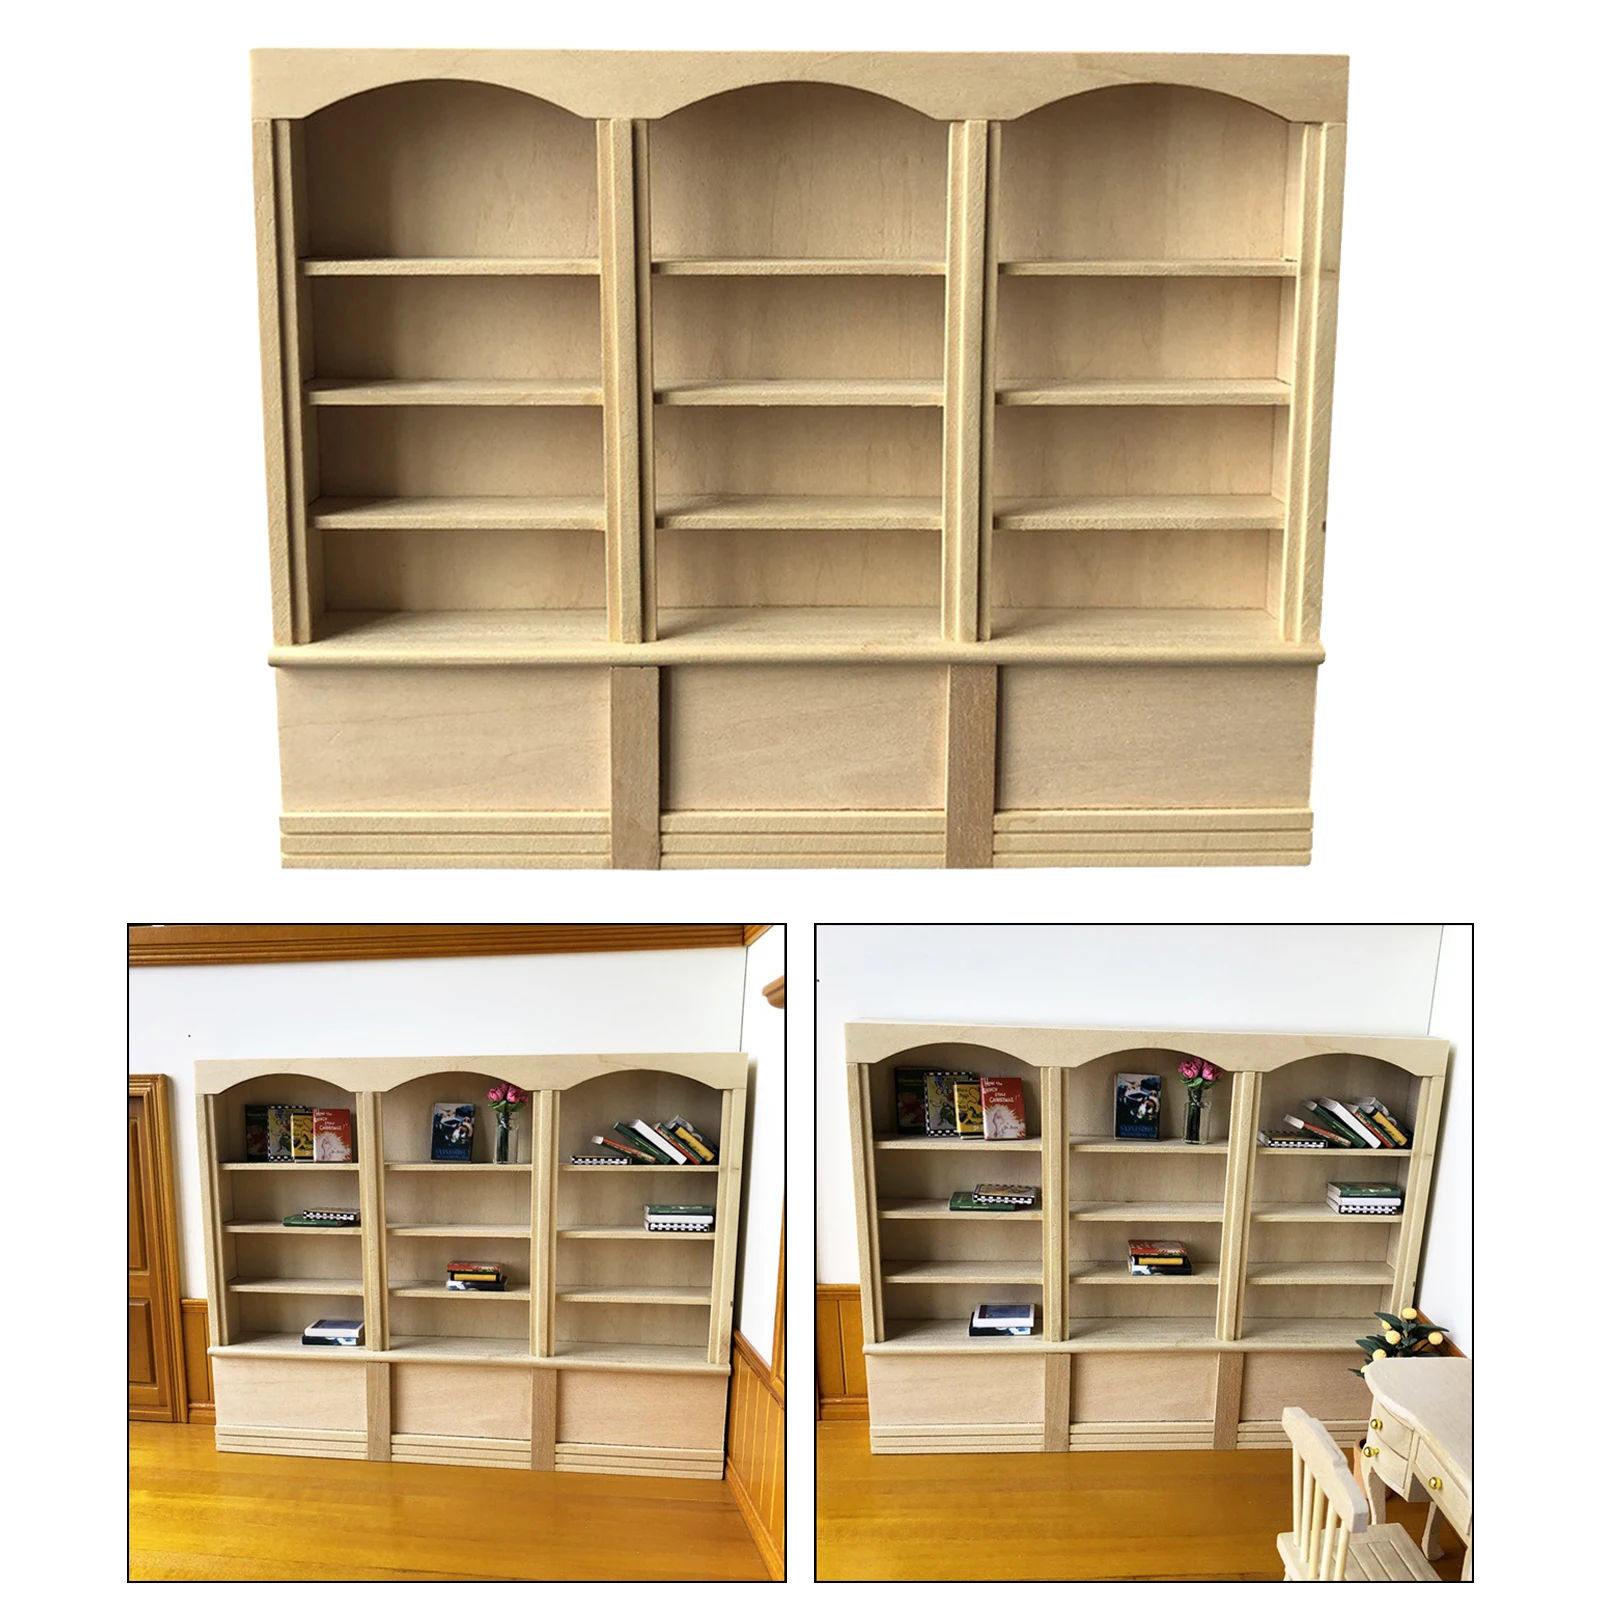 Wood Unfinished 1/12 Scale Dollhouse Bookshelf  Organizer 4 Layers